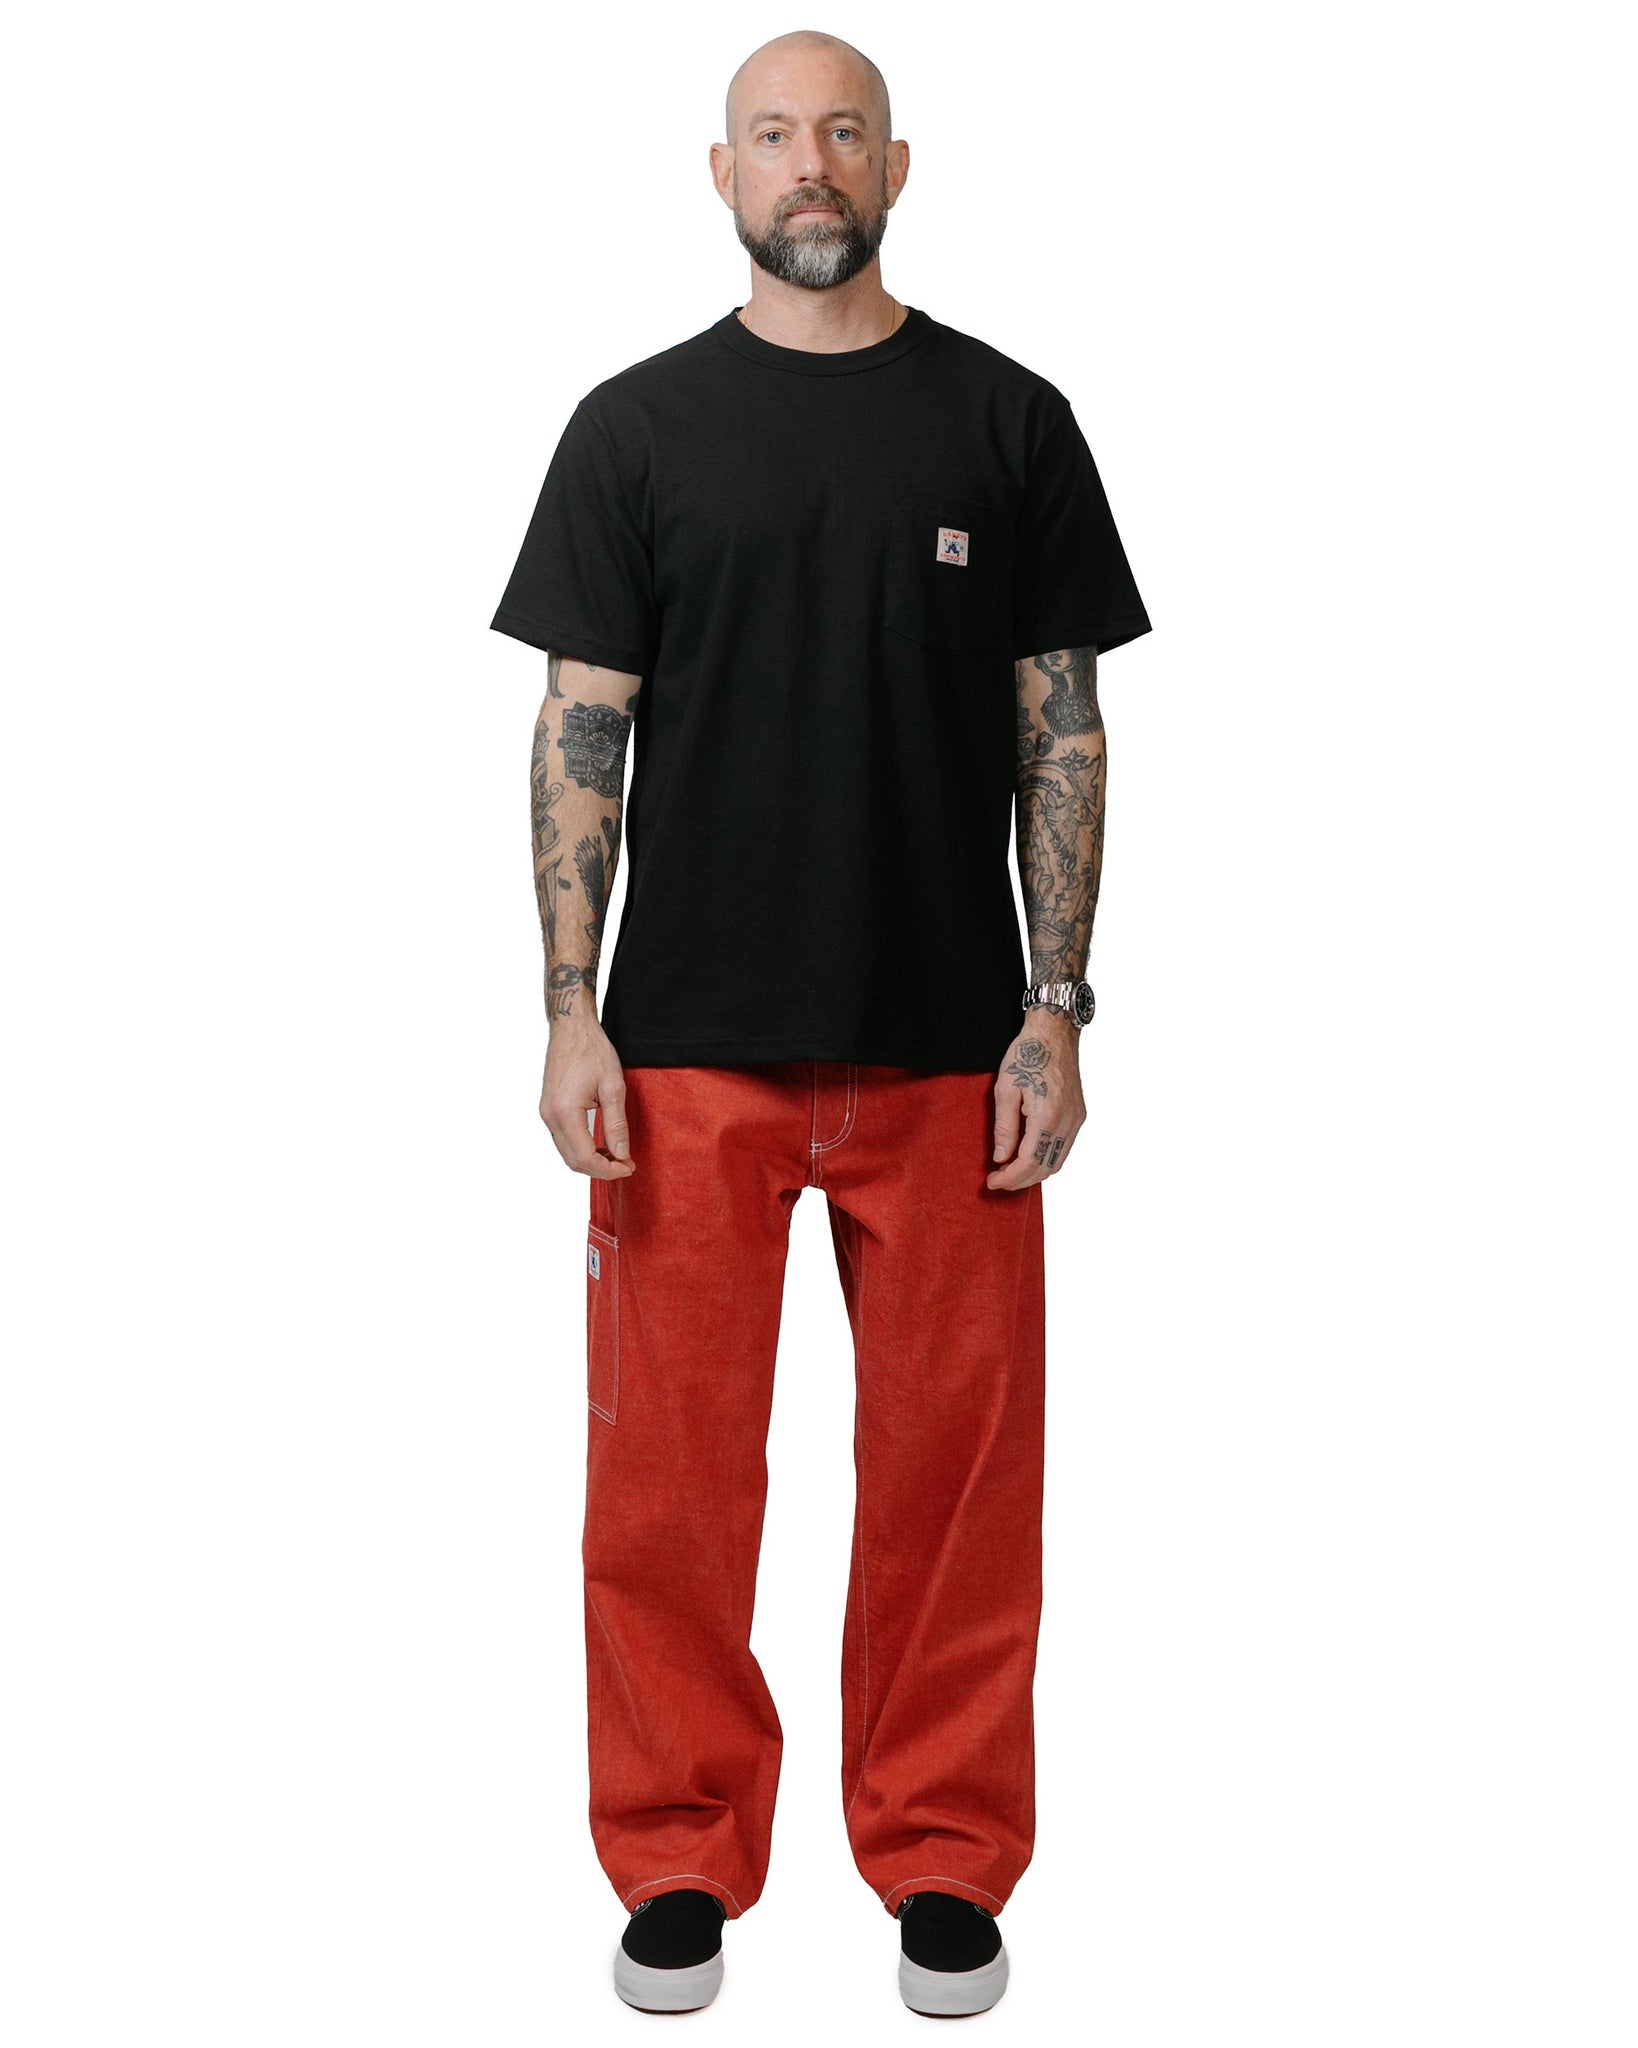 Randy's Garments 7-Pocket Jean 13.75oz Laundered Uncut Selvedge Denim Red model full